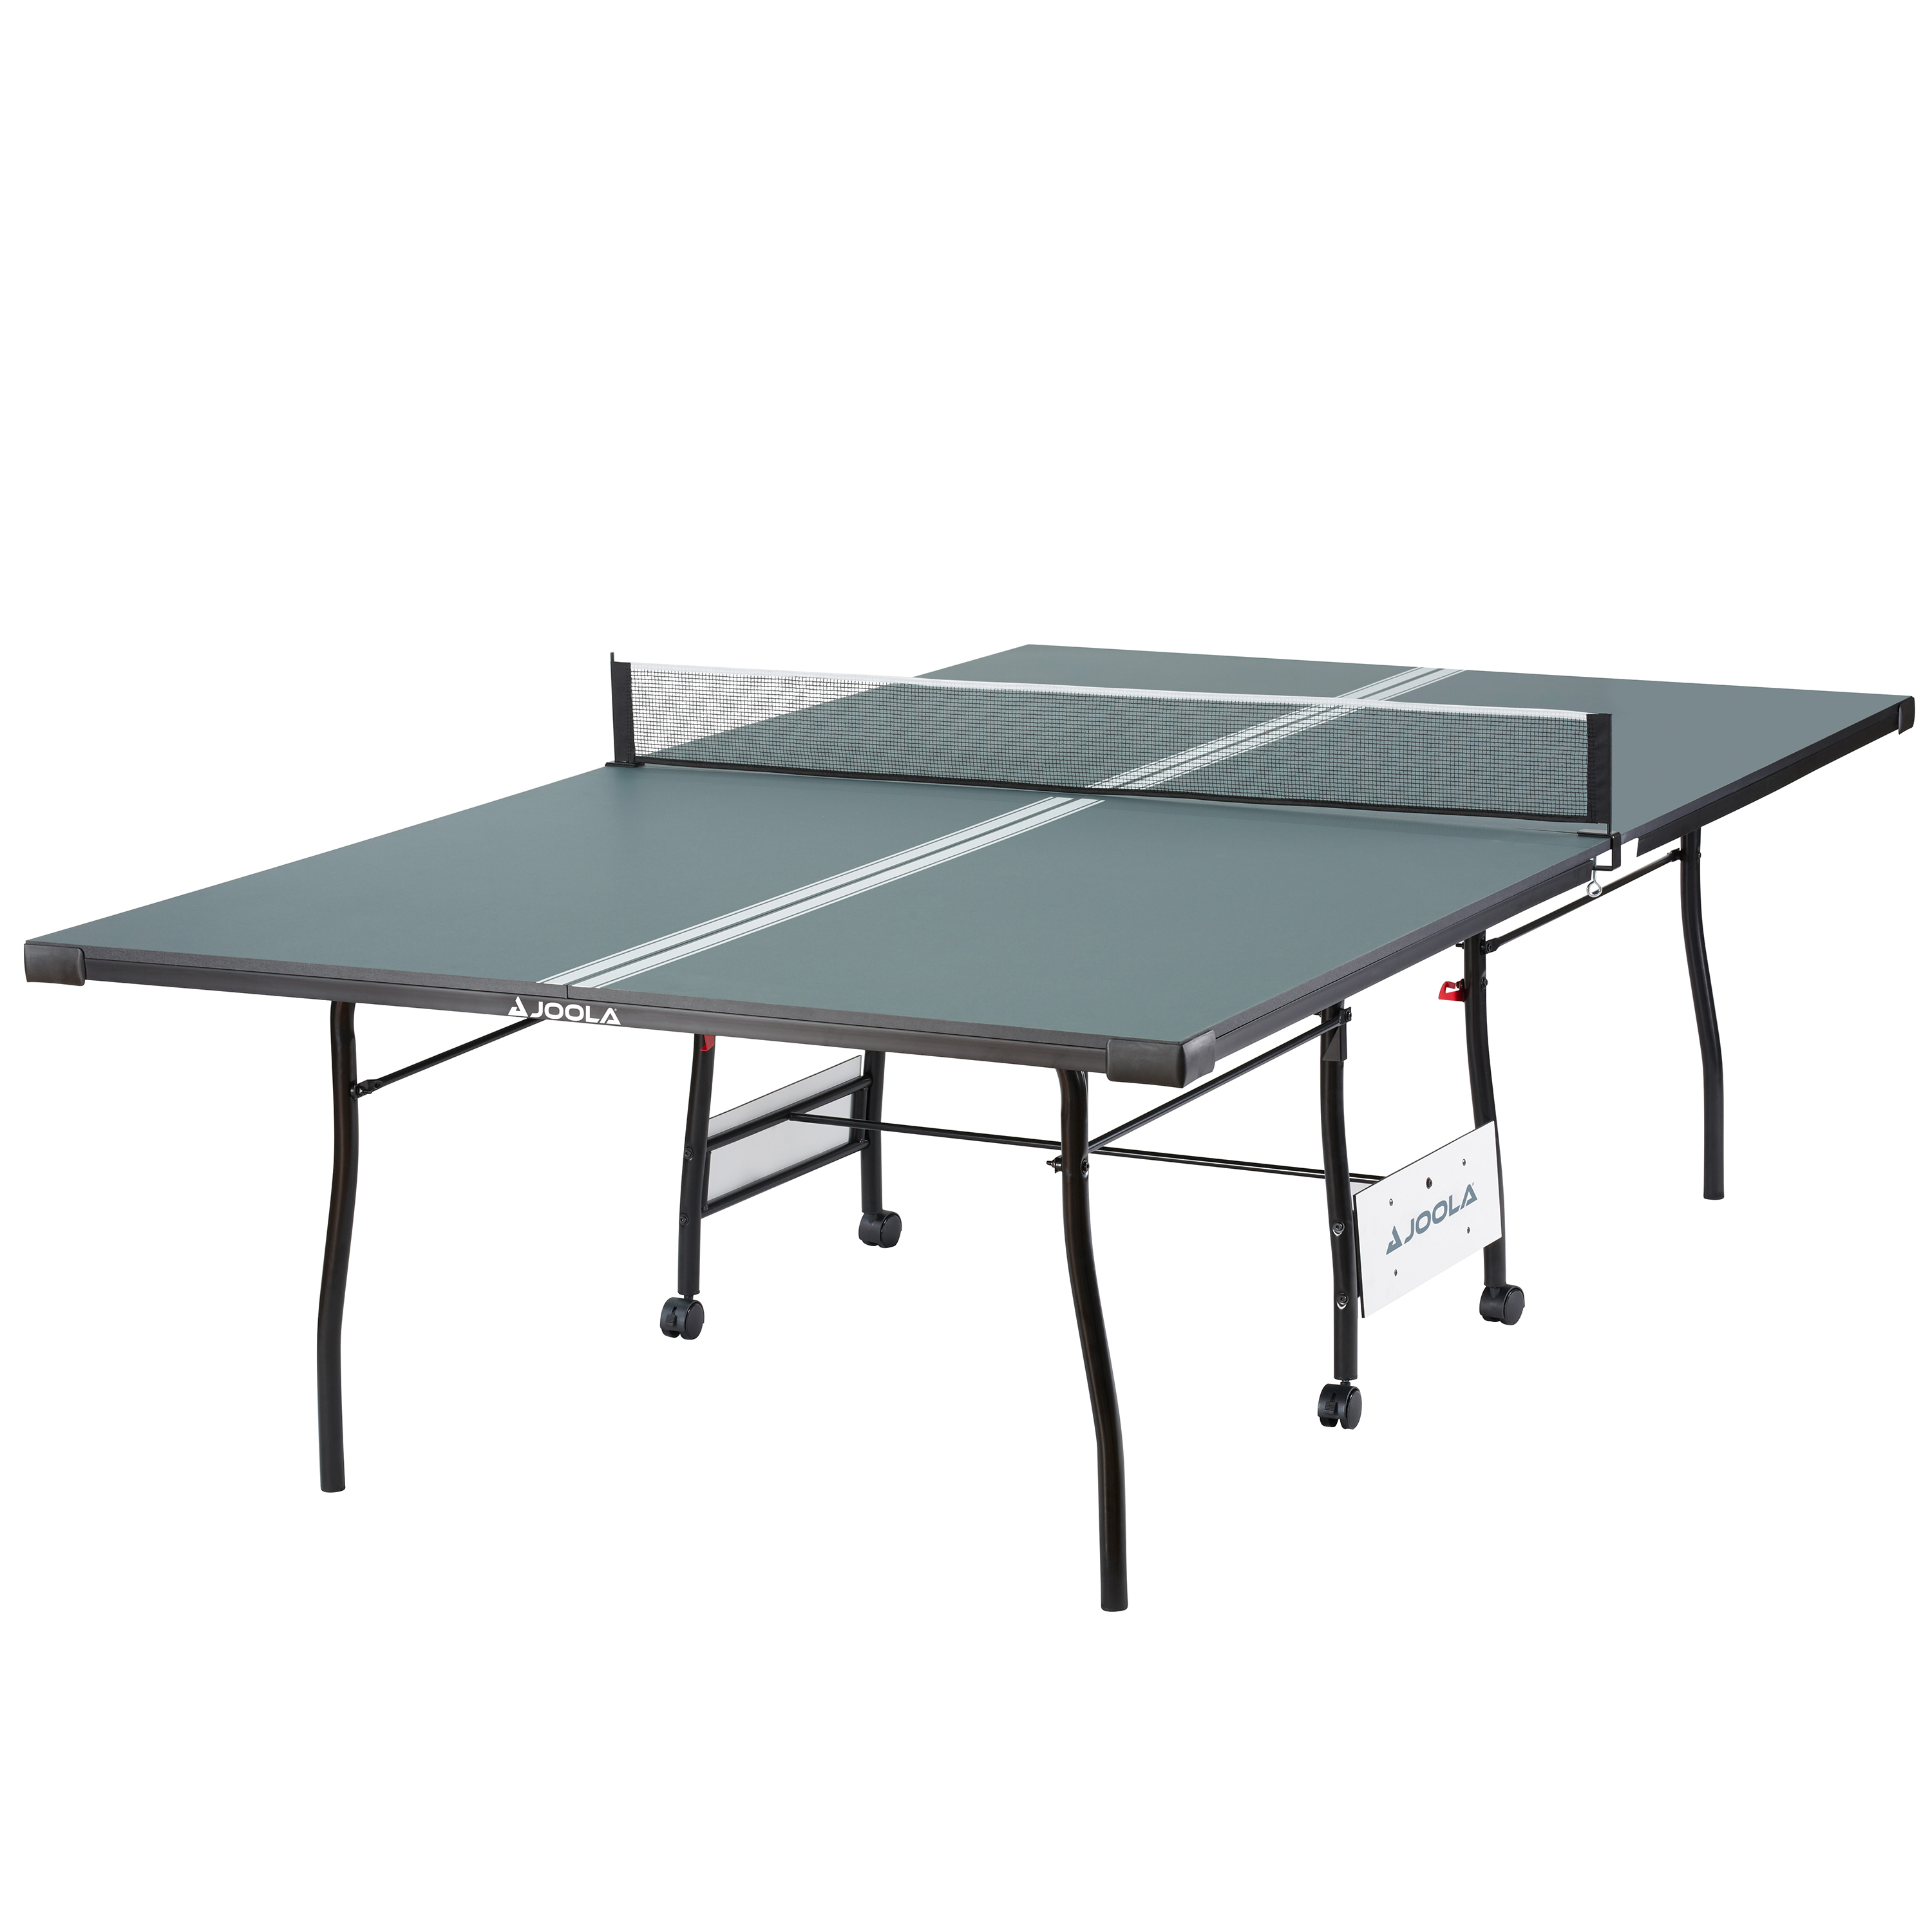 JOOLA Indoor Table Tennis Table, Green - image 1 of 7